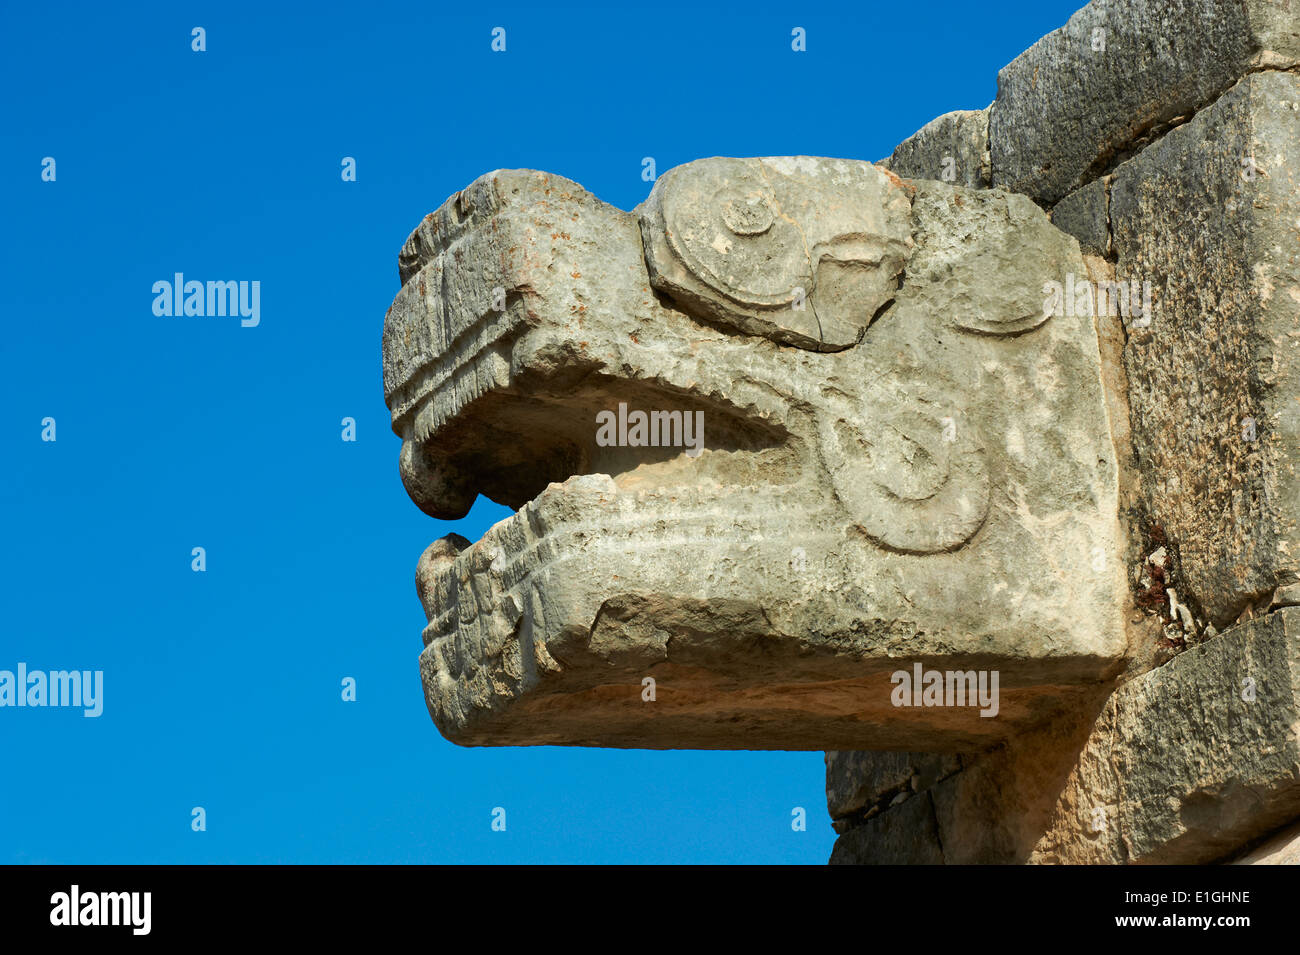 México, Estado de Yucatán, sitio arqueológico Chichen Itzá, Patrimonio Mundial de la UNESCO, la cabeza de serpiente, las antiguas ruinas mayas Foto de stock